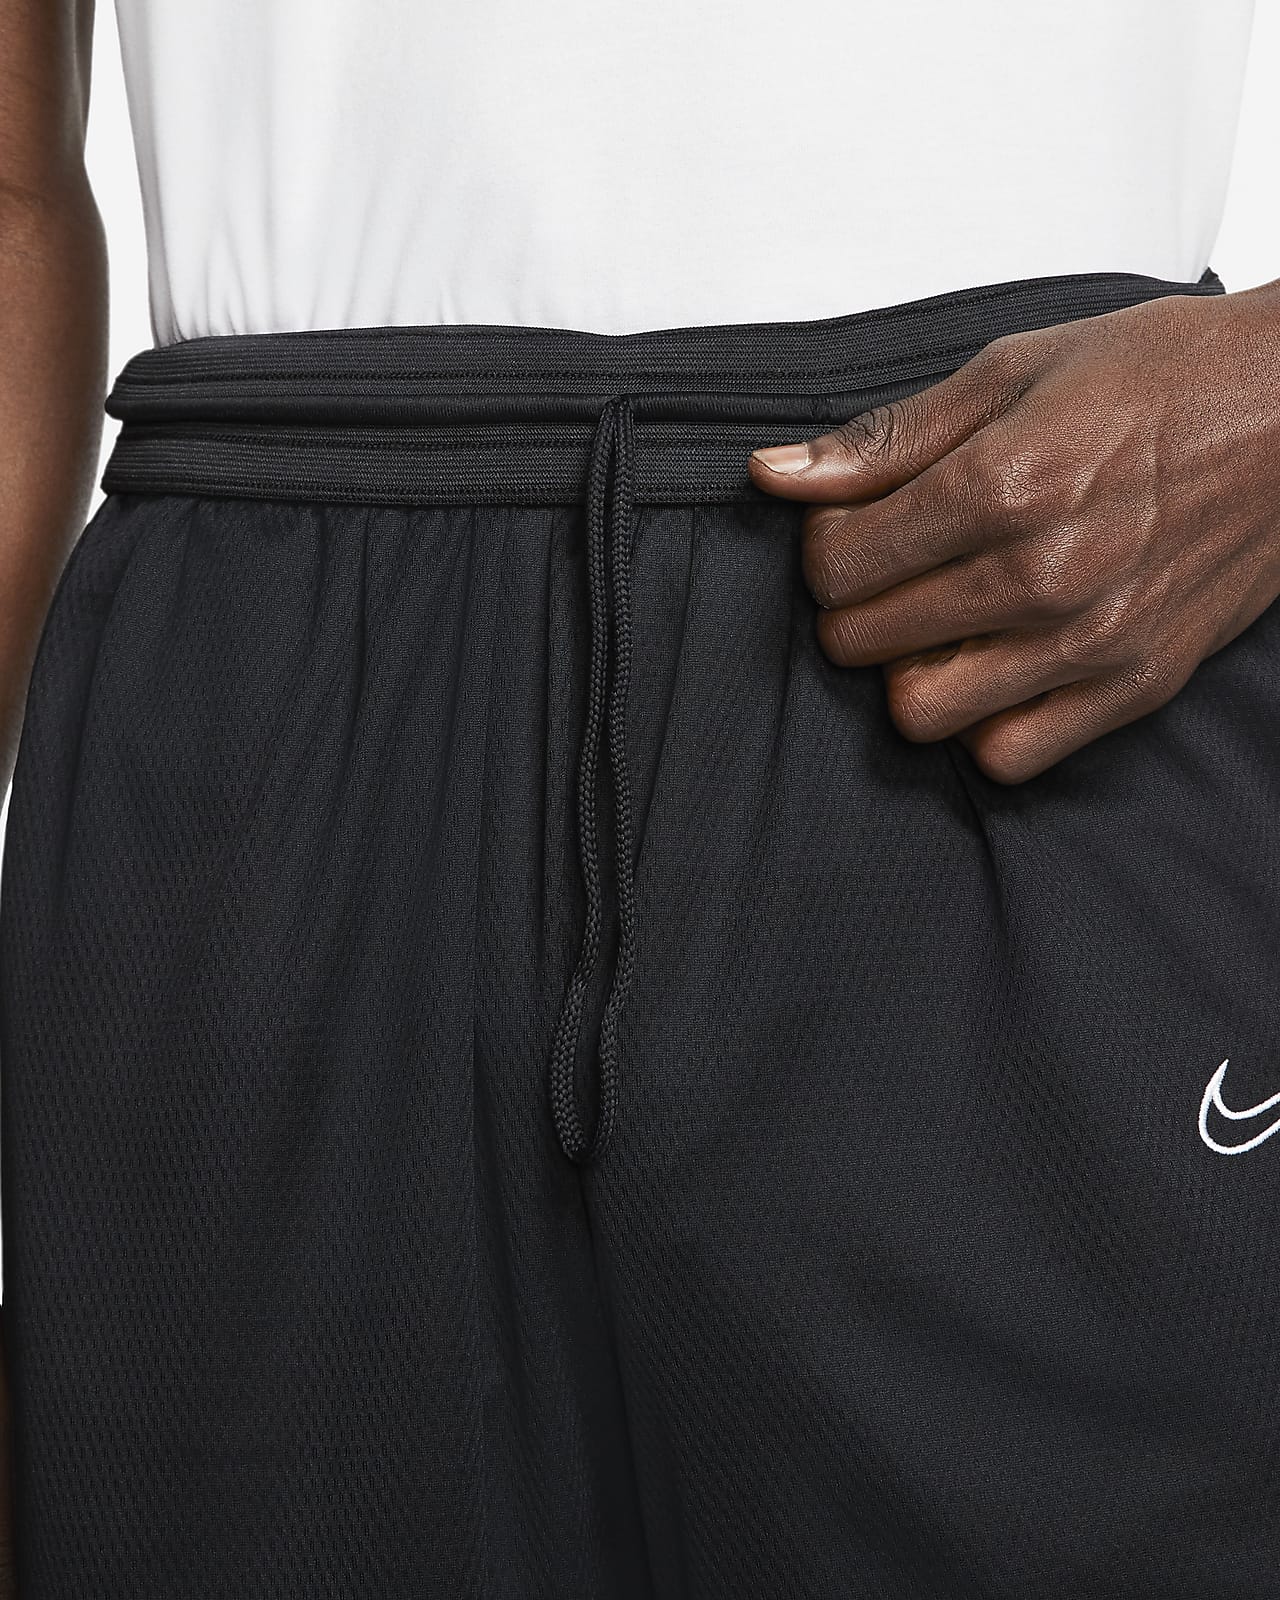 Nike Men's Shorts.